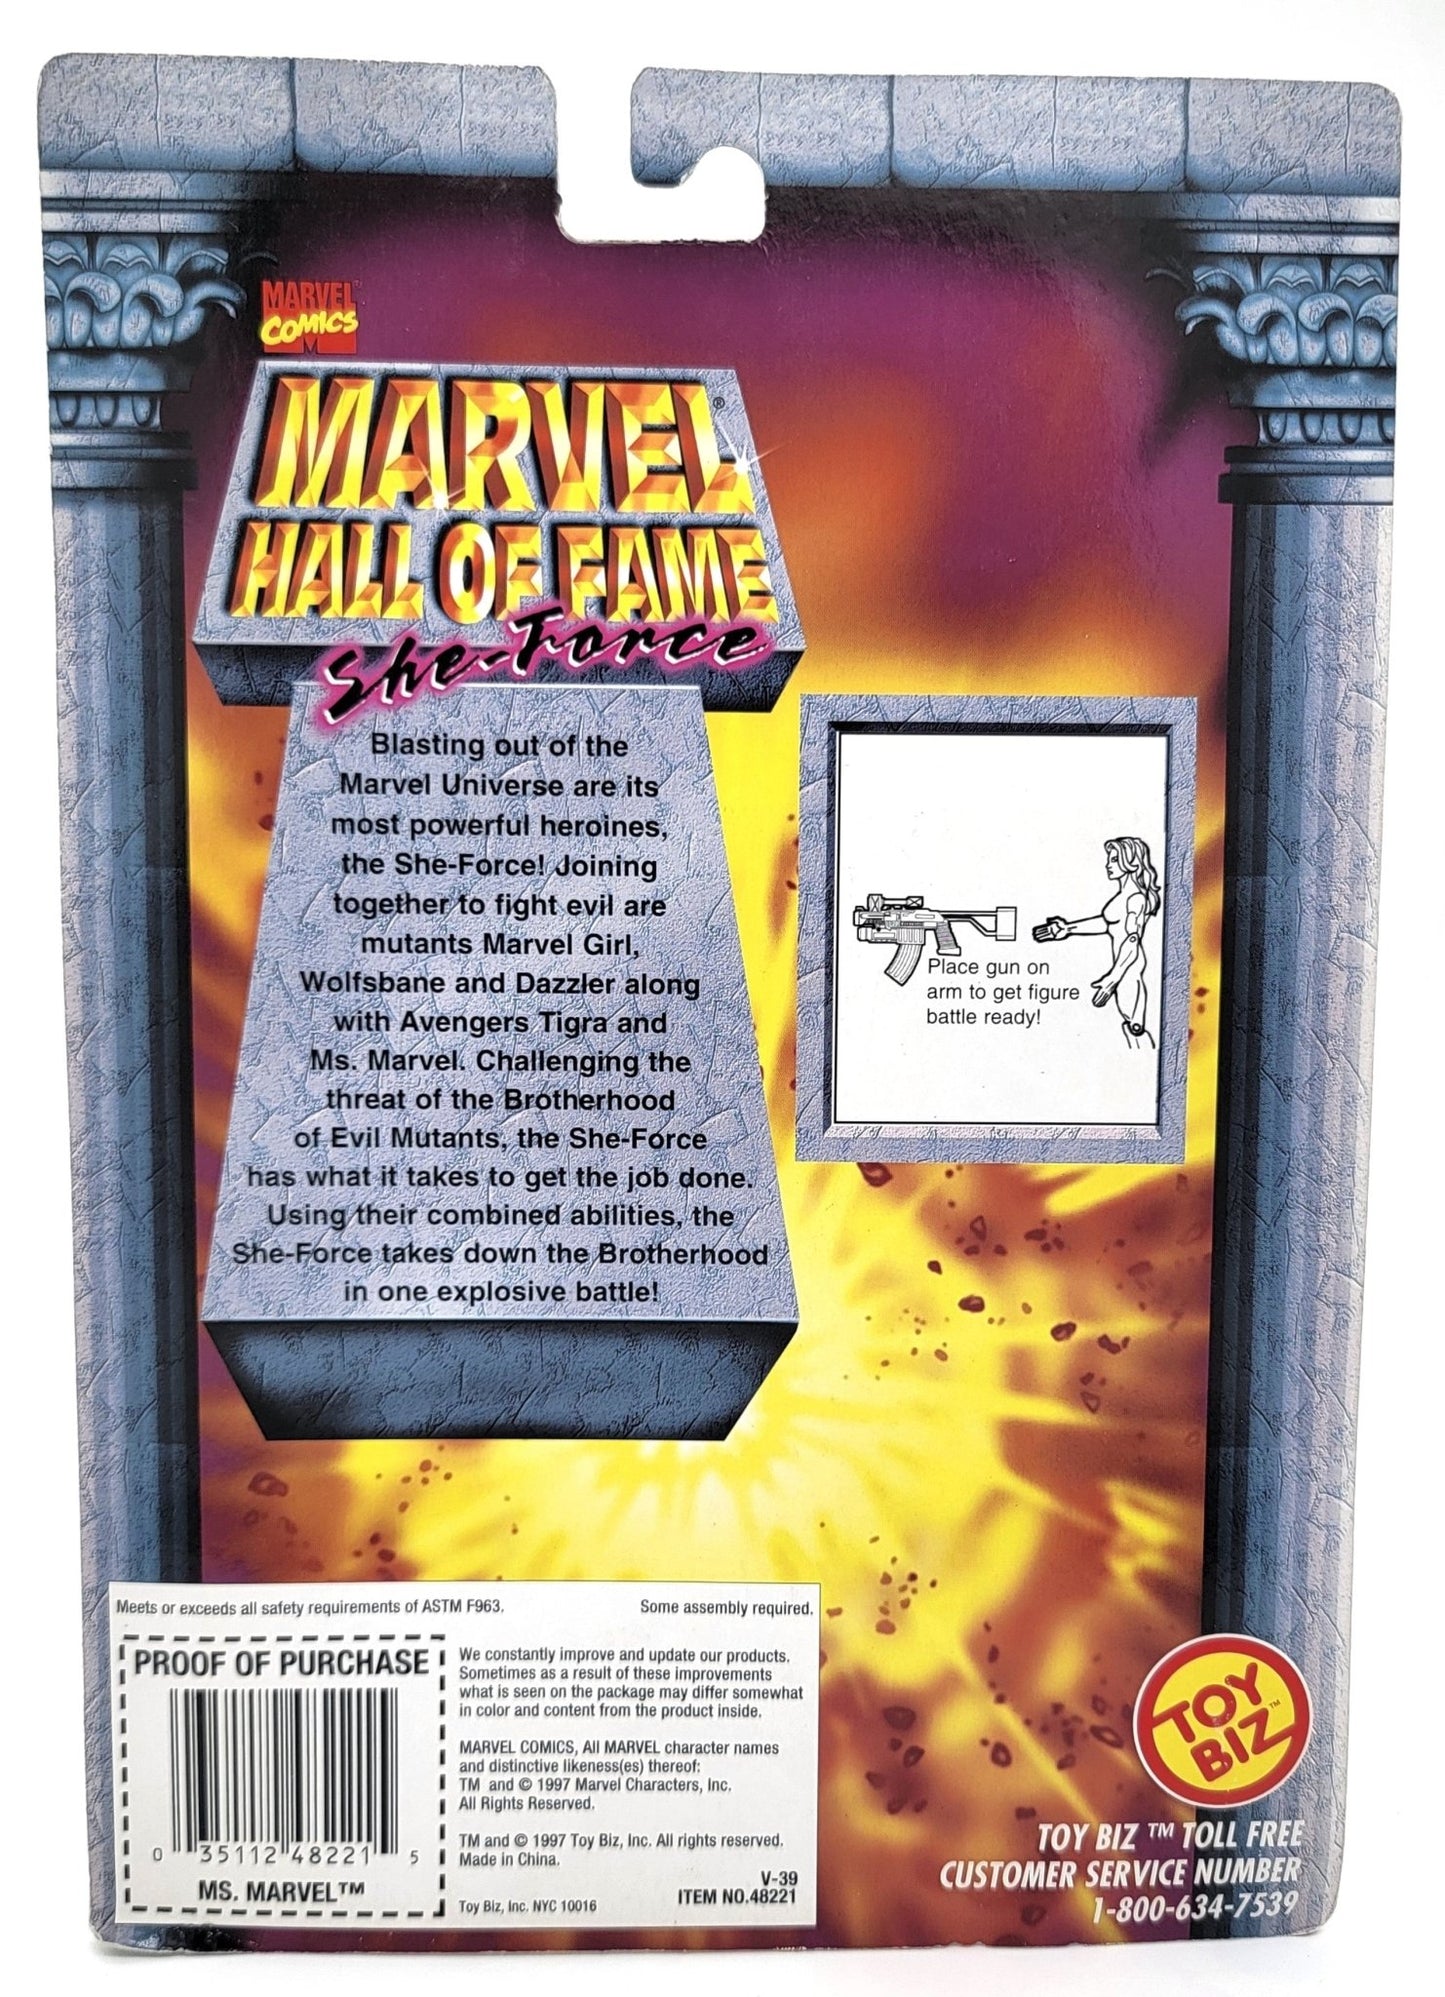 Toy Biz - Toy Biz | Marvel Hall of Fame She Force Ms Marvel 1997 | Vintage Marvel Action Figure - Action Figures - Steady Bunny Shop